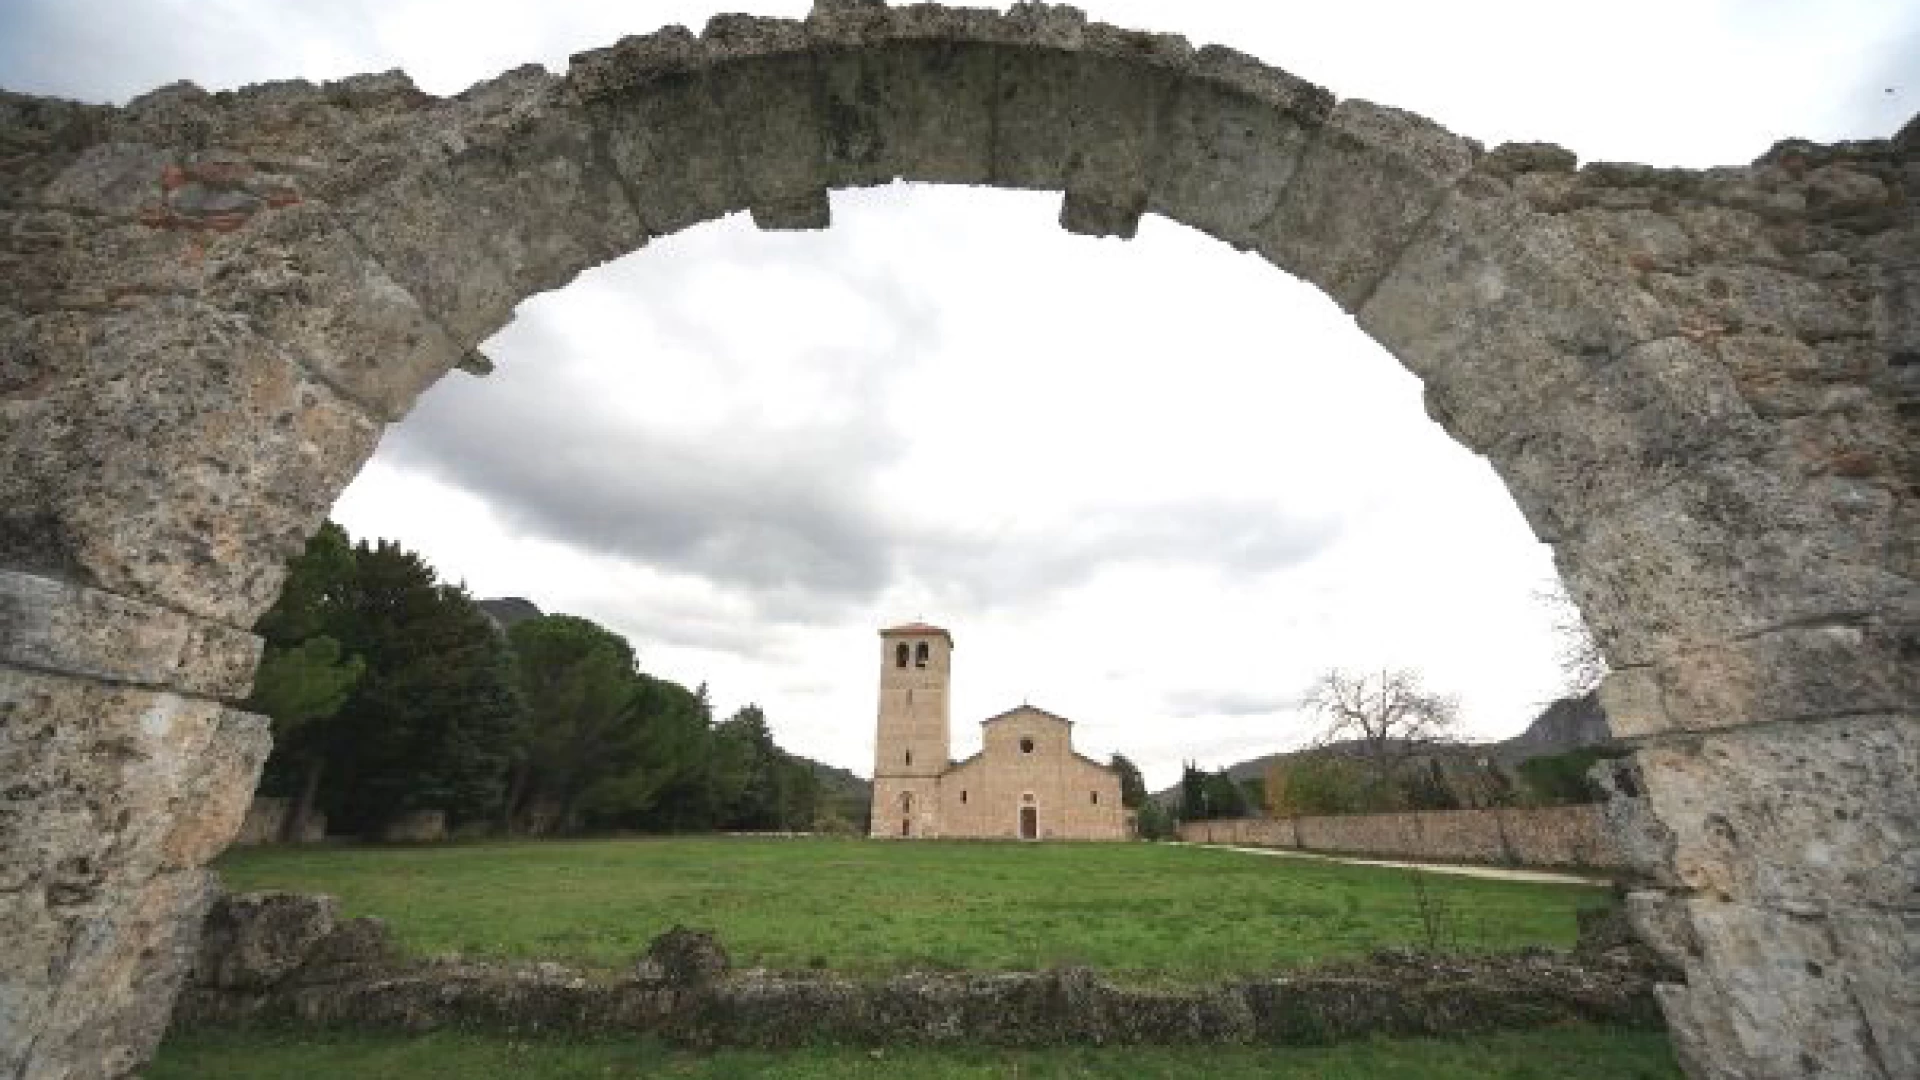 Rocchetta a Volturno: monache sfollate arrivate presso l’Abbazia di San Vincenzo al Volturno. Il loro convento a Sant’Angelo in Pantano è inagibile.